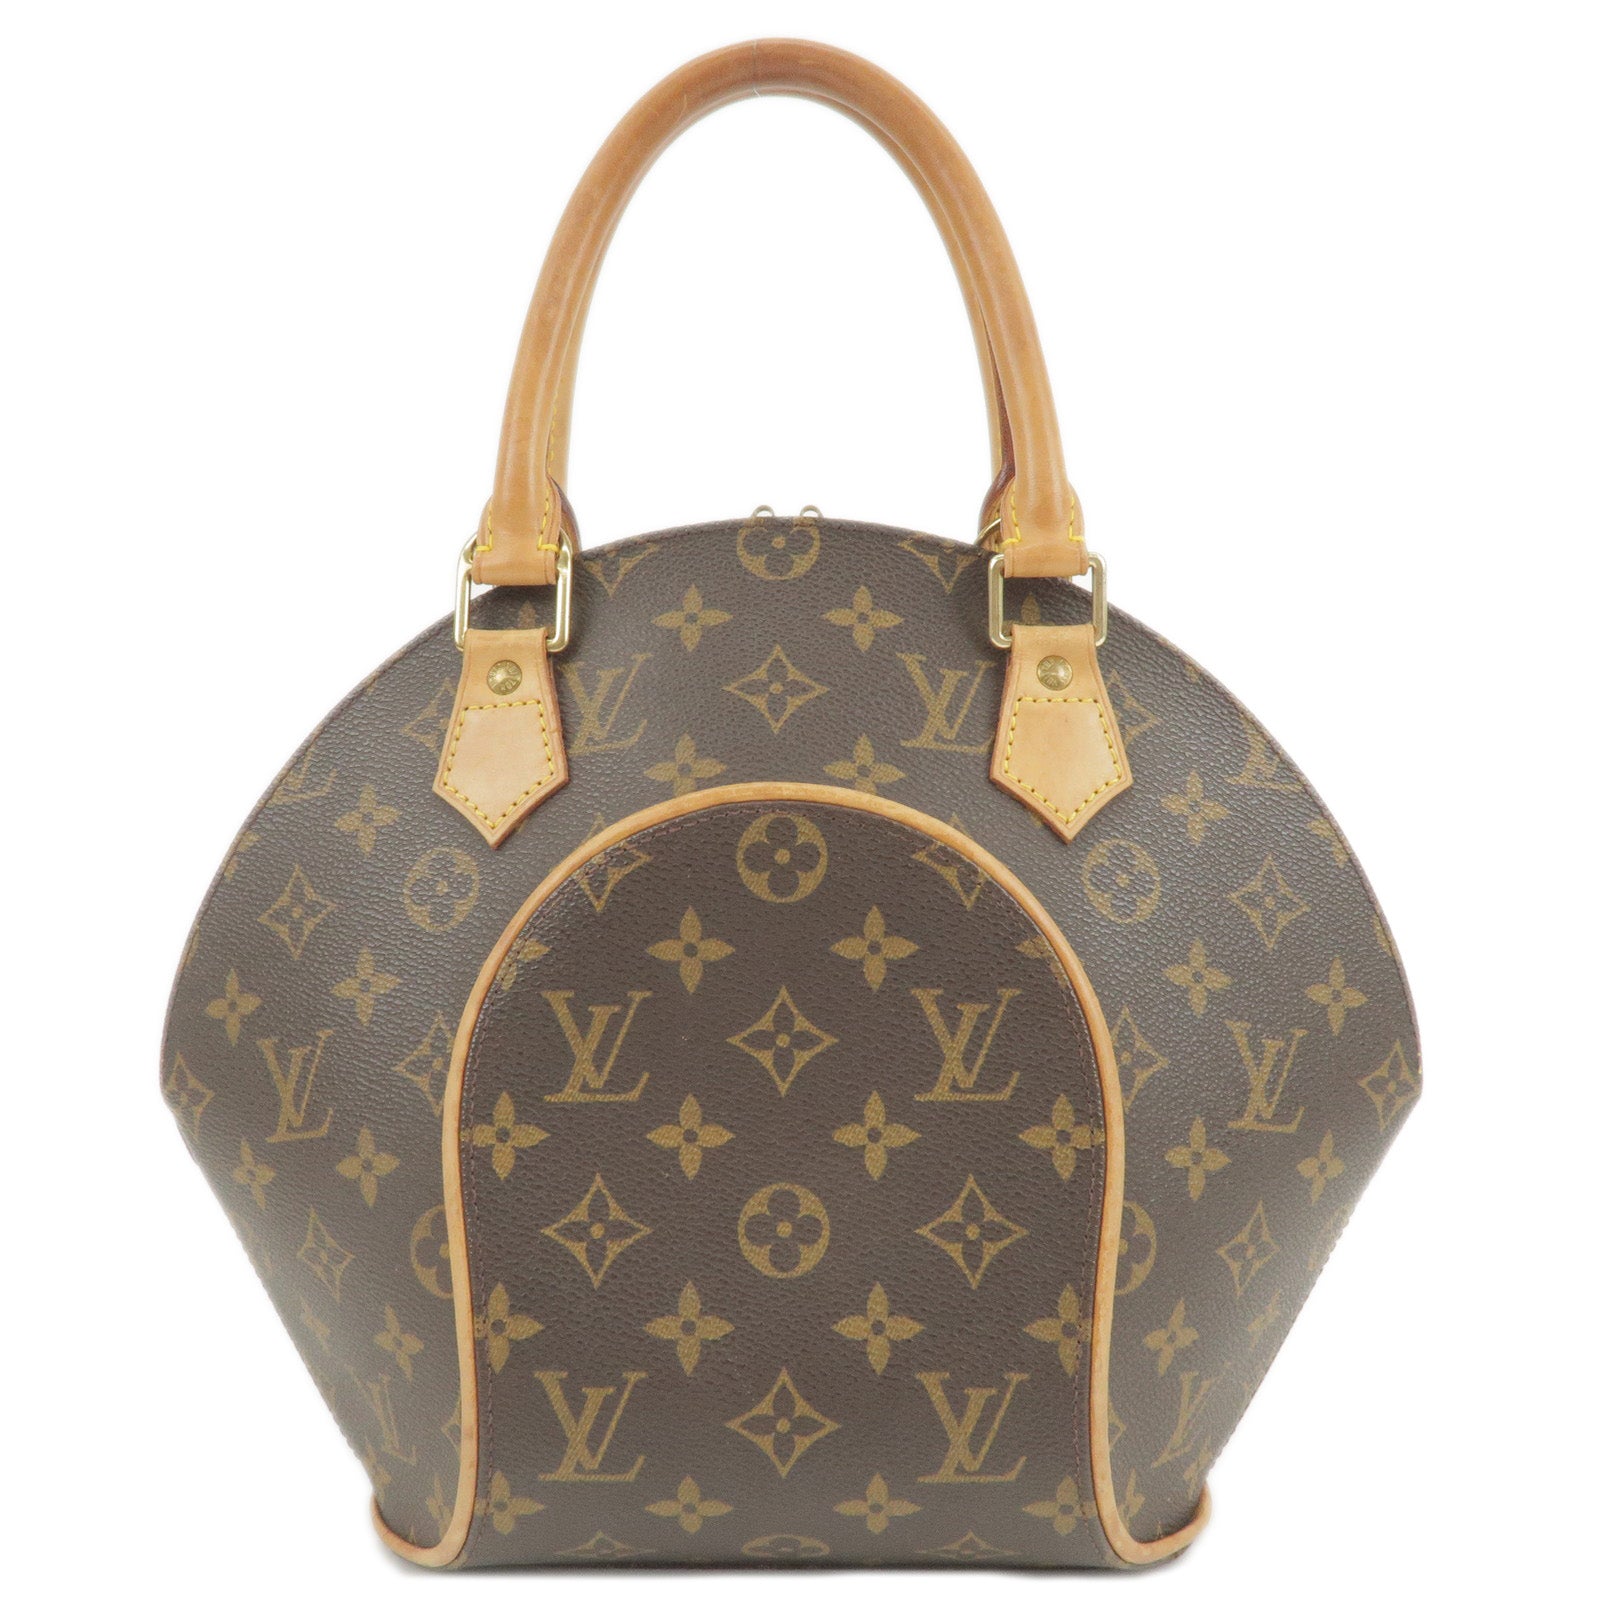 Louis Vuitton Black Epi Leather Speedy 25 Bag with Strap - Yoogi's